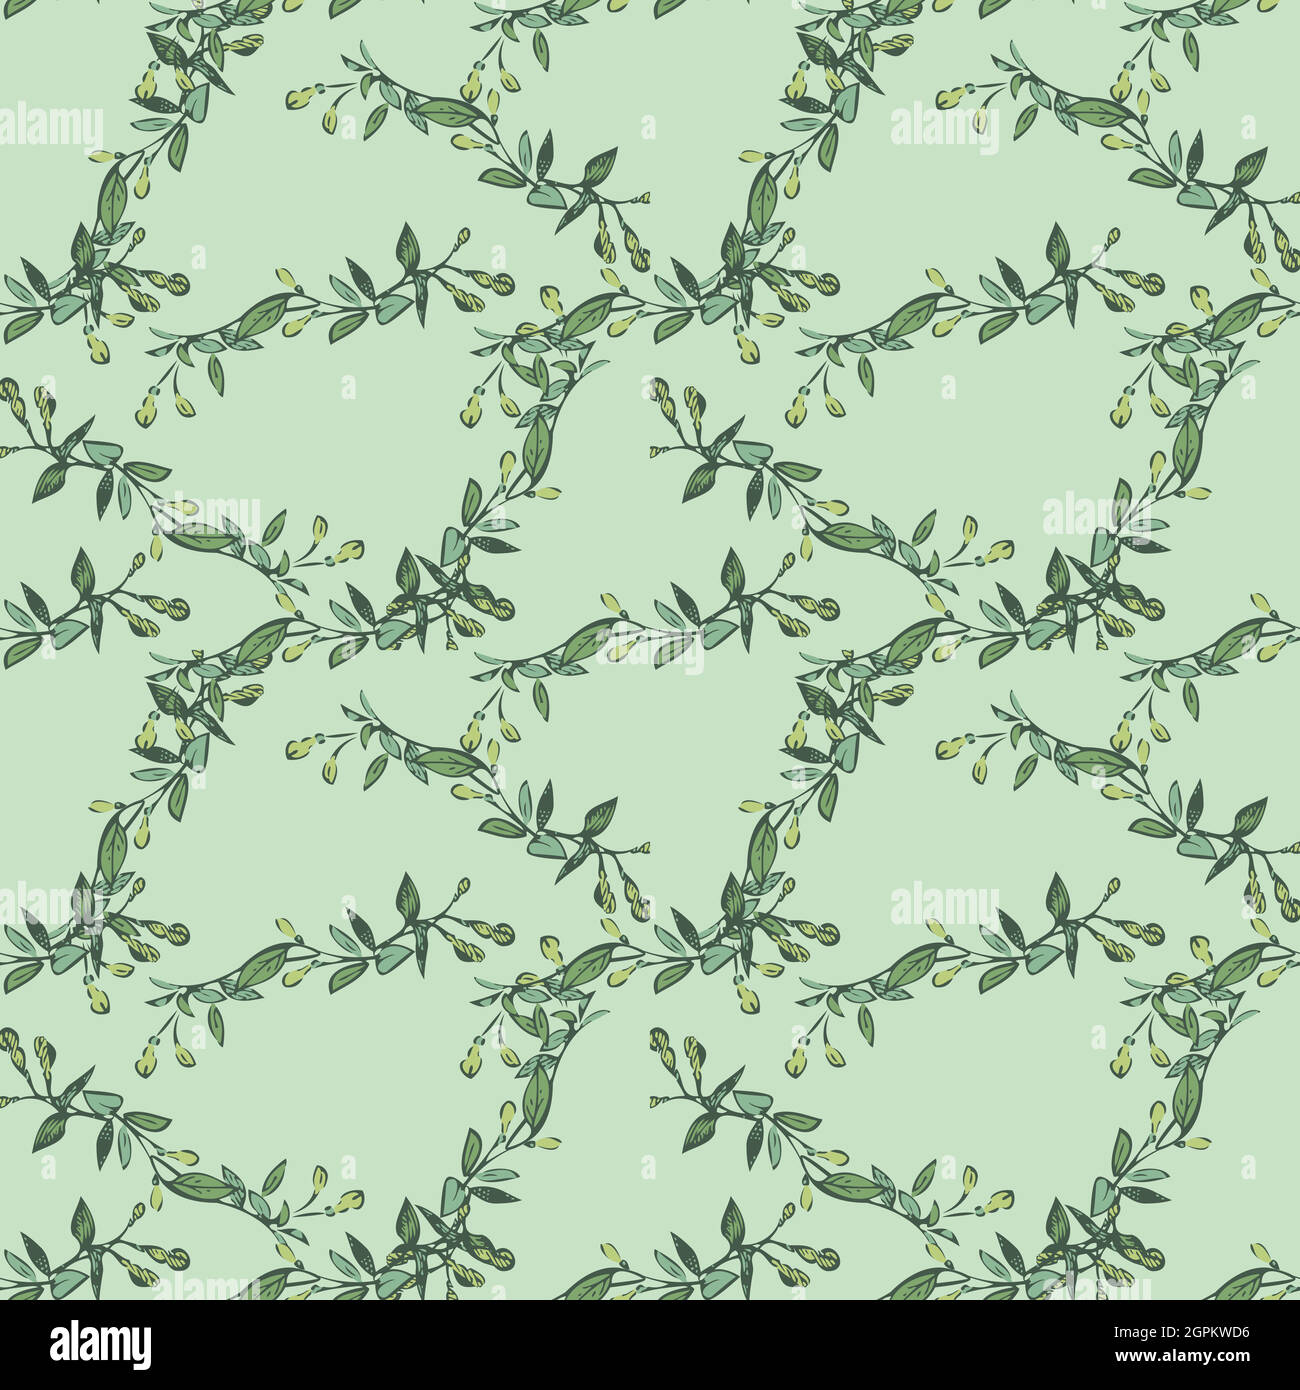 Branche d'eucalyptus avec dessin de bourgeons, motif floral sans couture, vecteur d'arrière-plan abstrait nature. Dessin au trait, illustration botanique, motif graphique, tissu. Papier peint tendance vert menthe couleurs Illustration de Vecteur